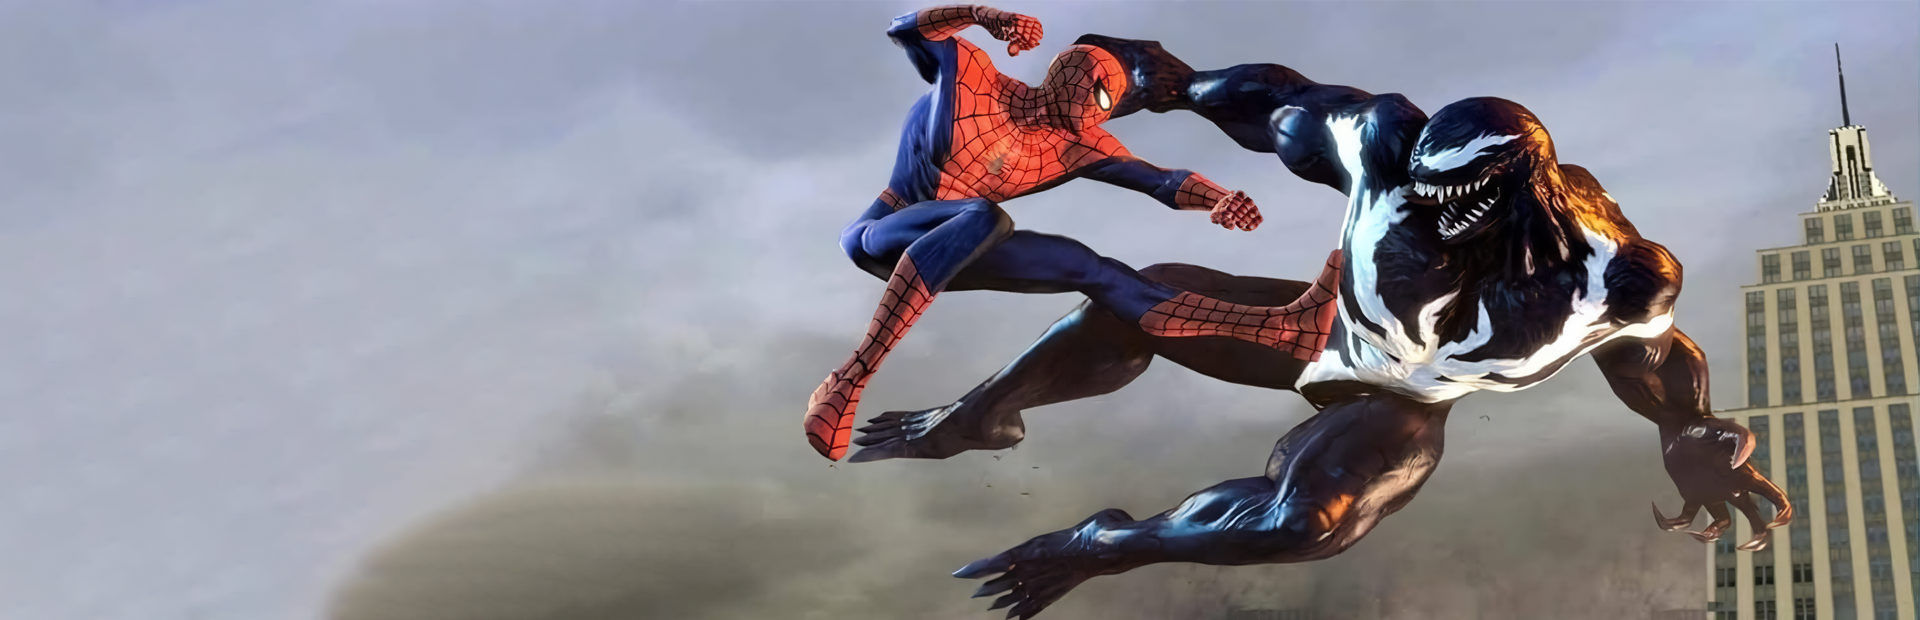 Spider-Man Web of Shadows on Steam Deck (Steam OS Gameplay) 